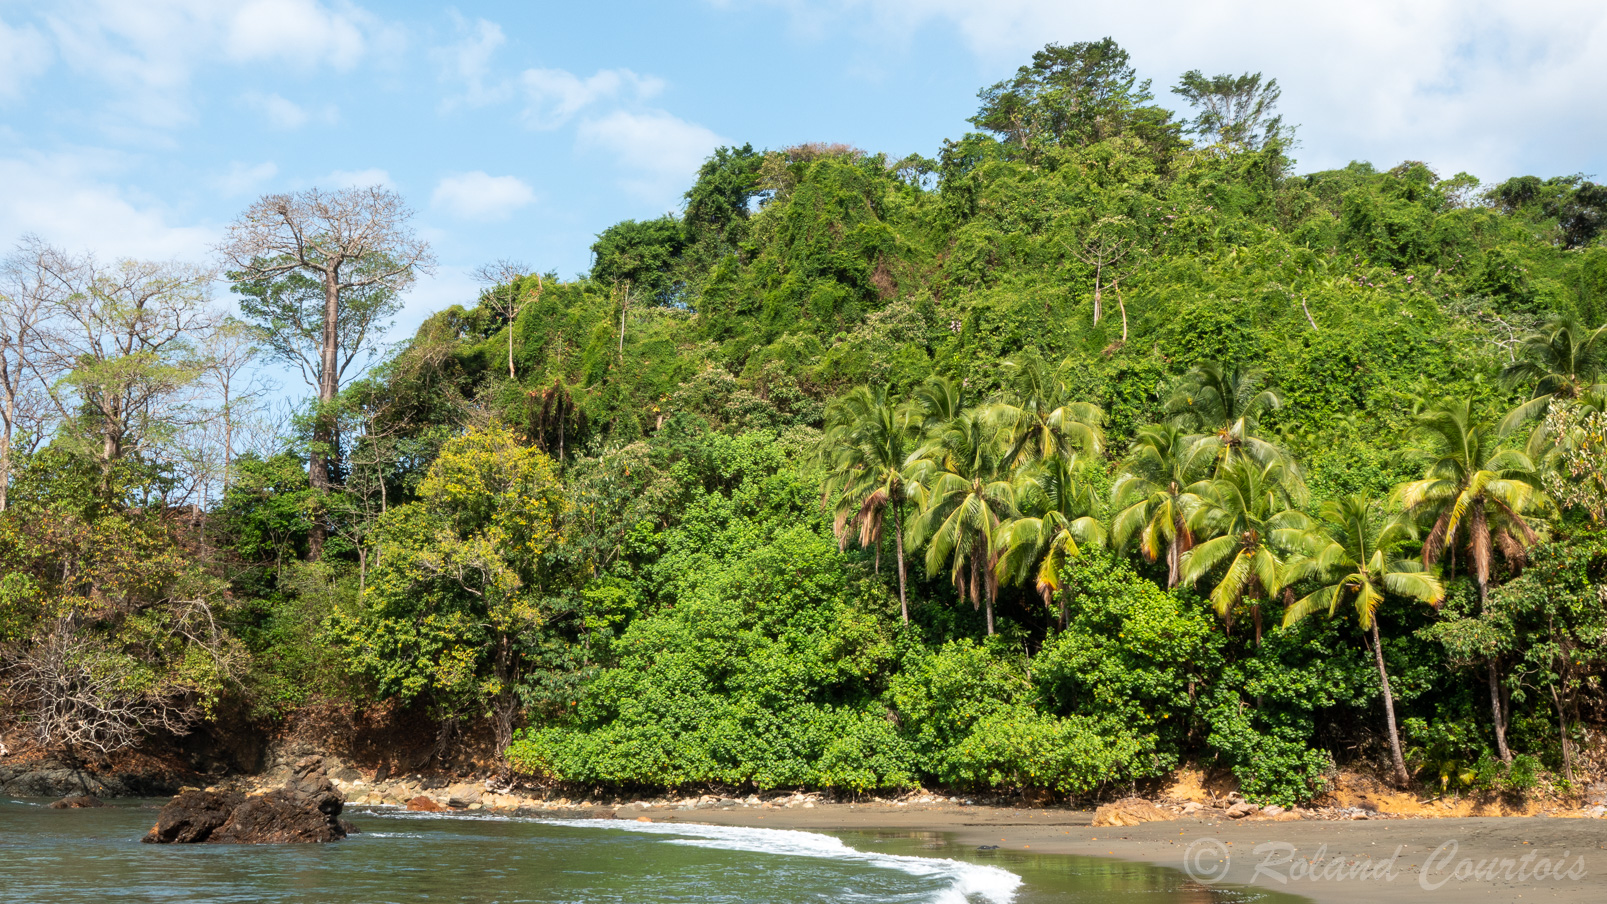 Région la plus isolée et la moins développée du Panamá, la province du Darién est une terre méconnue qui abrite une faune et une flore extrêmement riches.